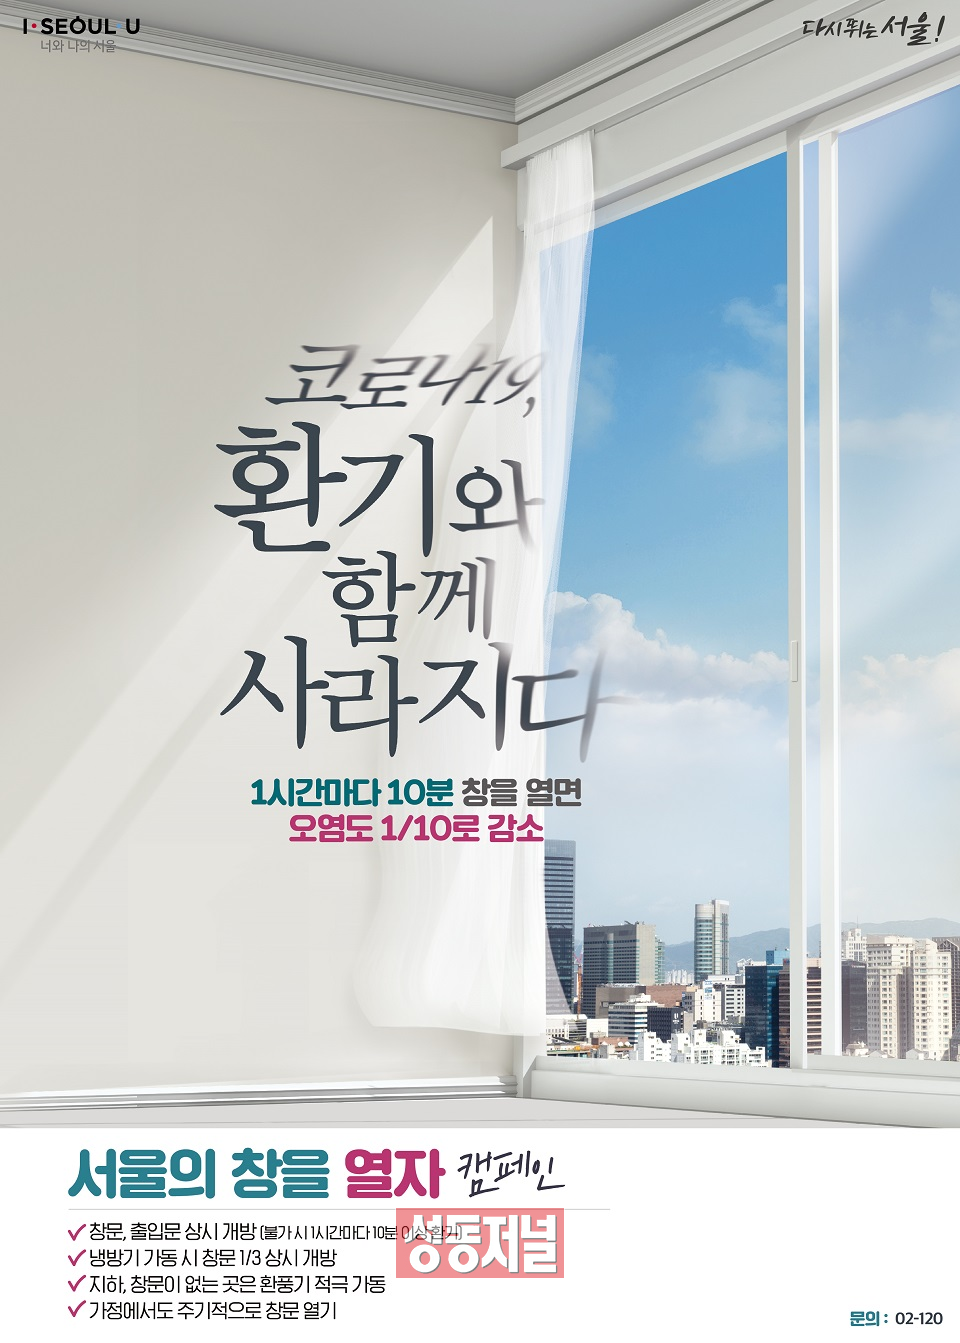 ‘서울의 창을 열자’ 홍보문